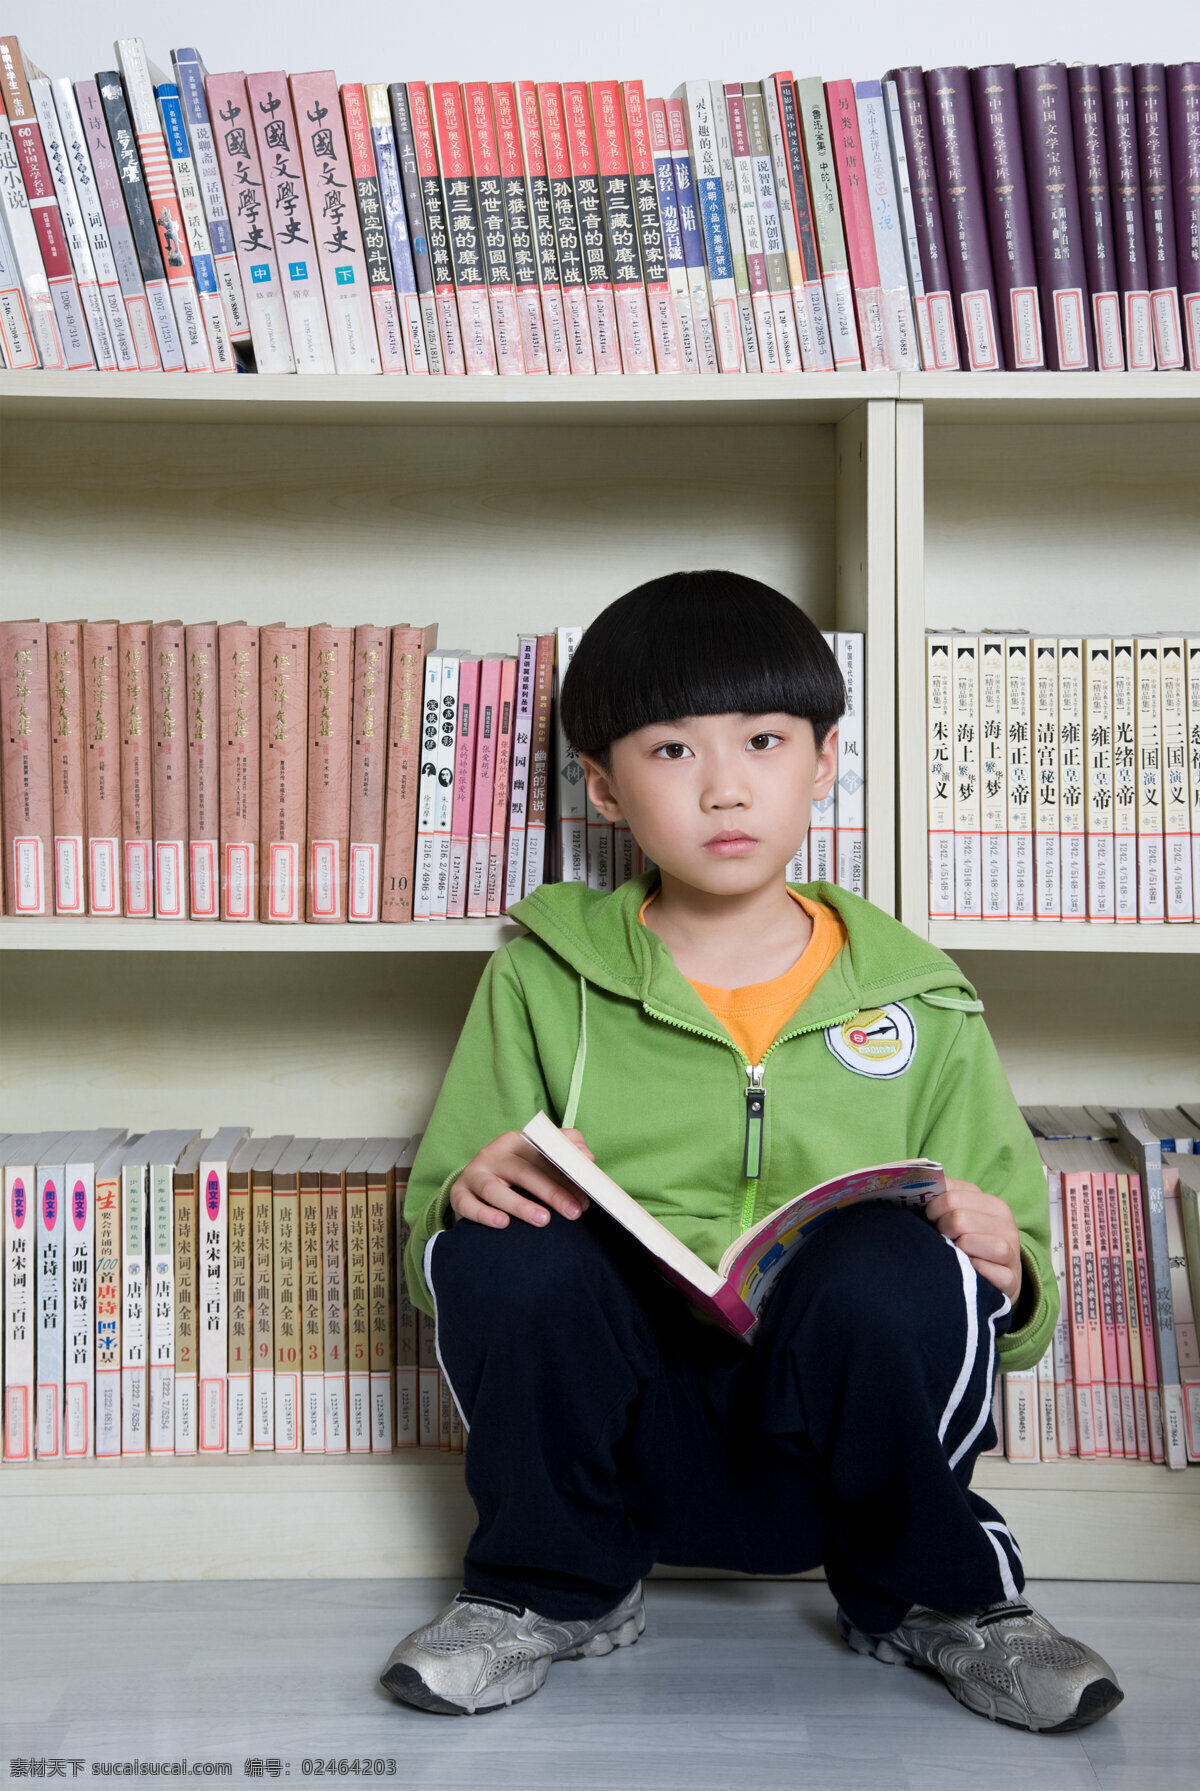 看书 小 男孩 小男孩 小学生 学习 儿童 图书 图书馆 阅览 阅览室 书架 蹲在地上 注视 聪明伶俐 高清图片 儿童图片 人物图片